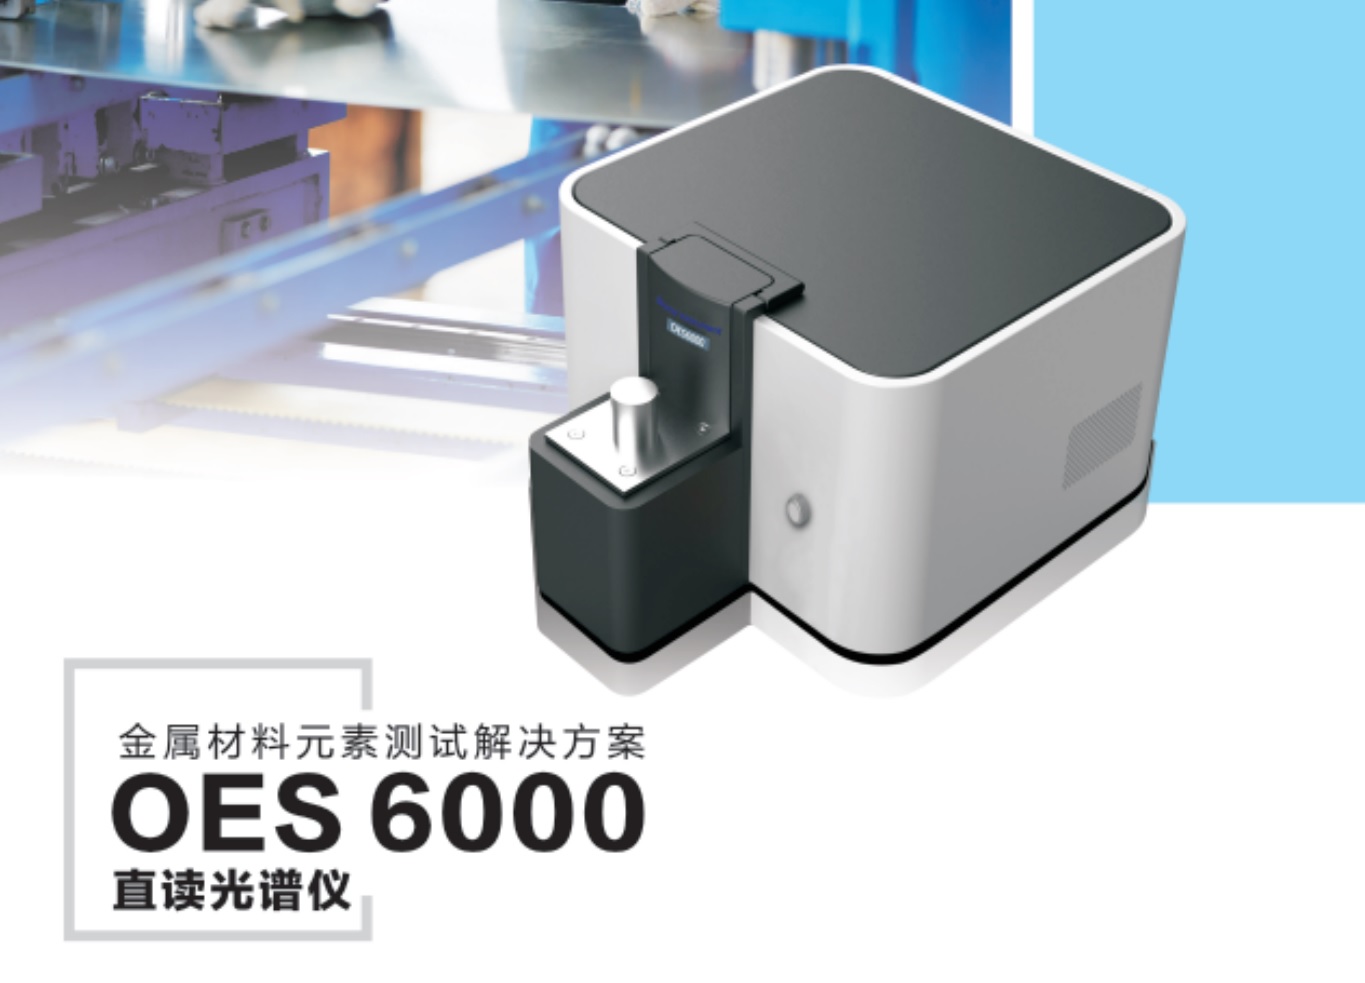 江苏天瑞仪器股份有限公司-OES6000